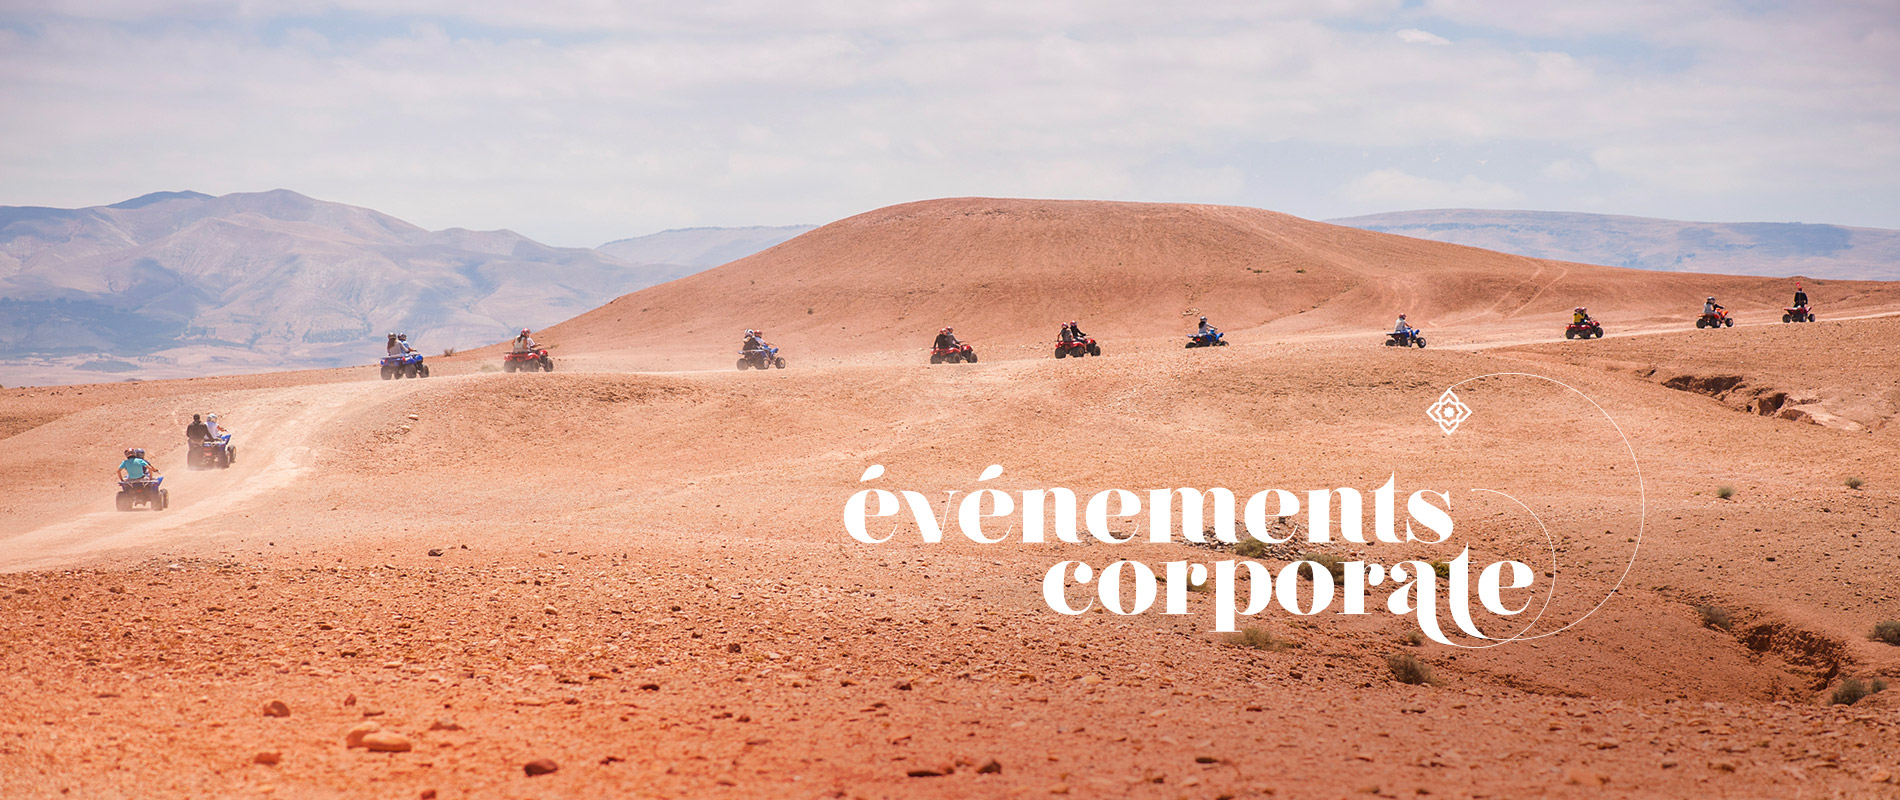 évènements corporates marrakech